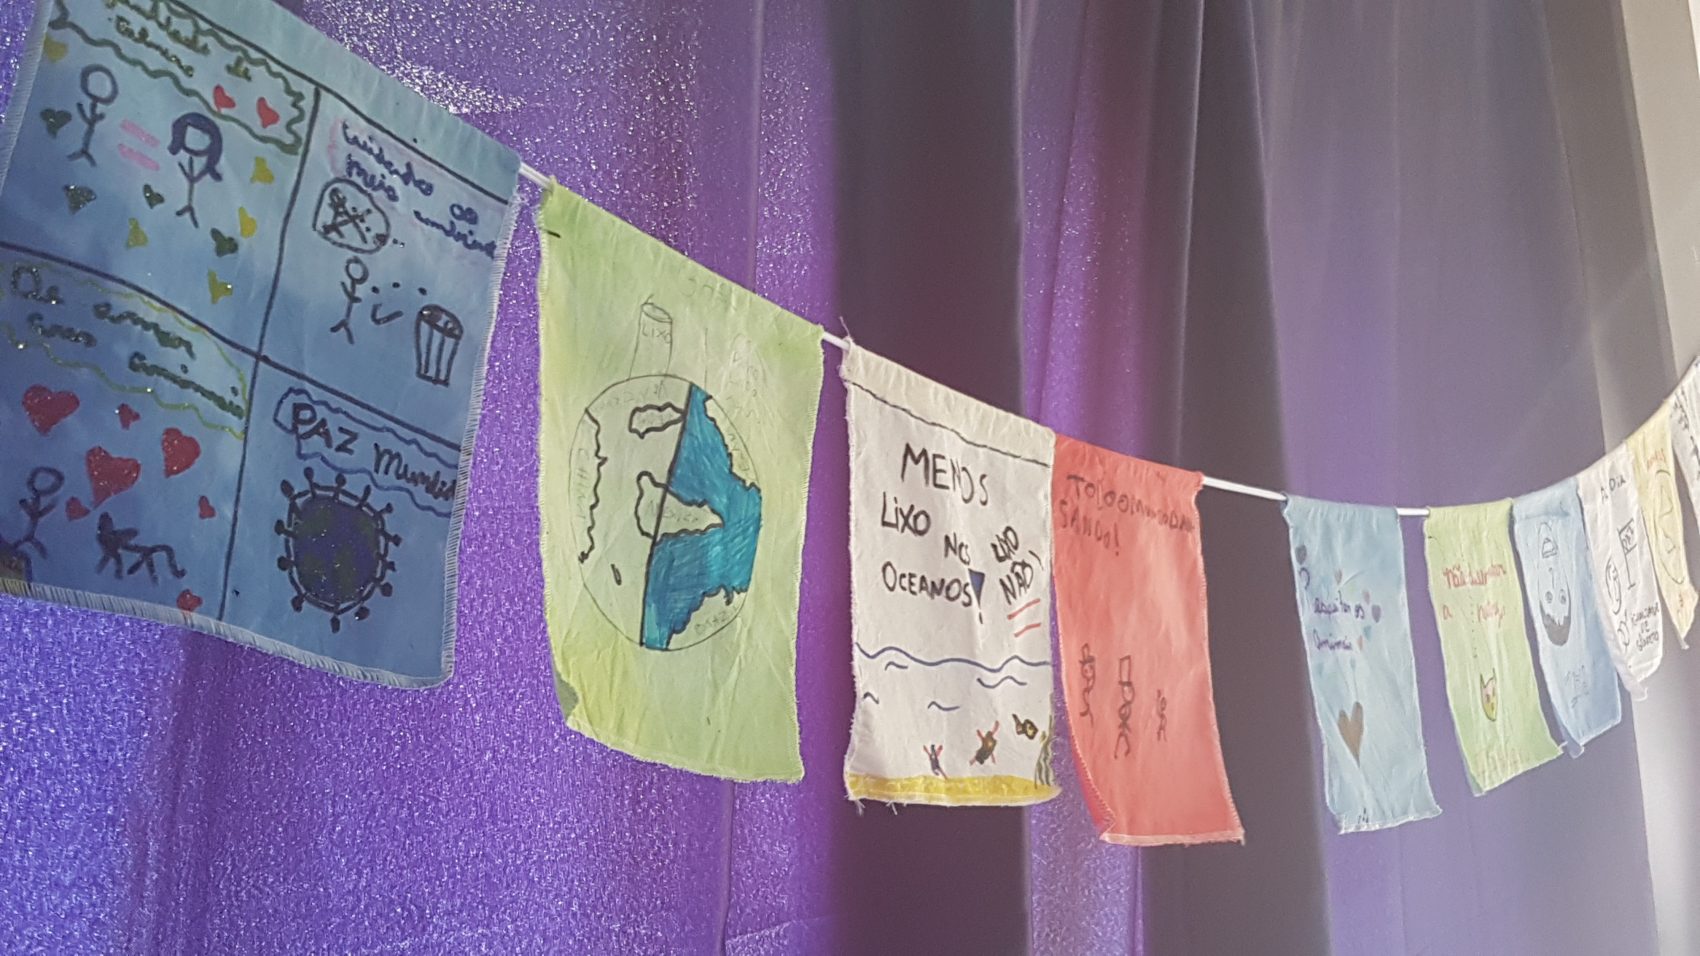 Desenhos feitos por educadores no workshop do método "Aprendizagem See", em São Paulo: foco no cultivo das competências sociais e emocionais (Foto: Florência Costa)